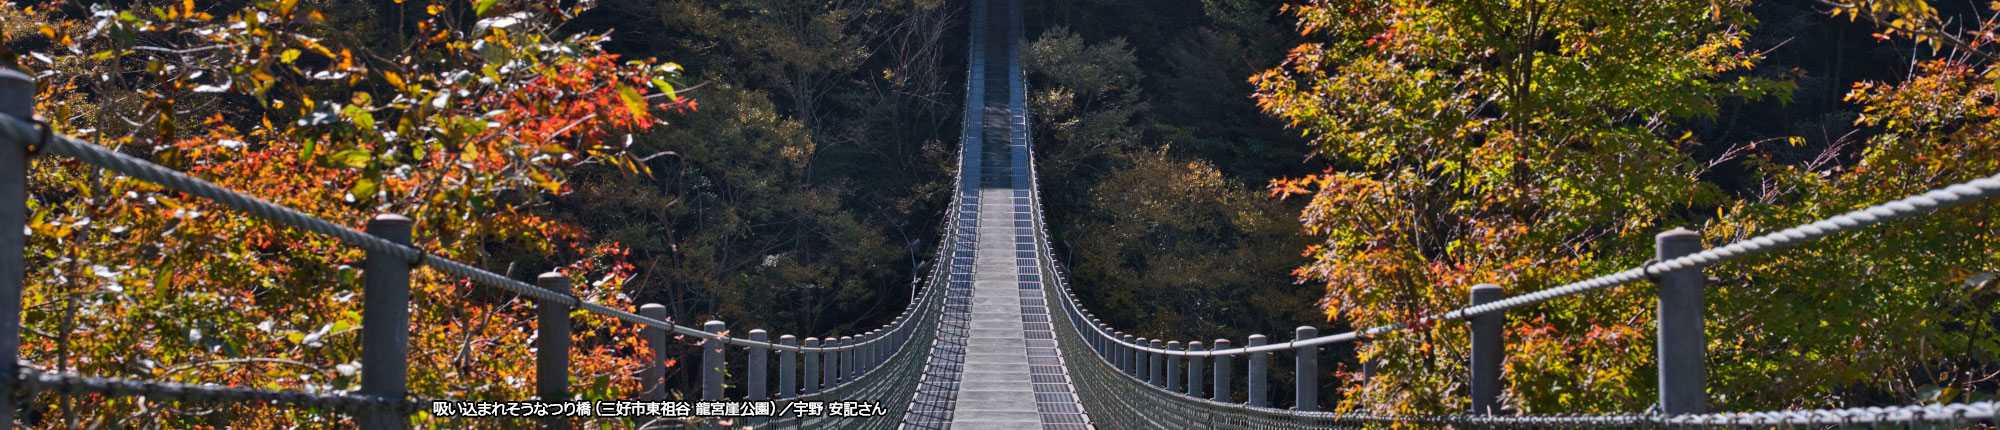 吸い込まれそうなつり橋（三好市東祖谷 龍宮崖公園）撮影 宇野 安記さん